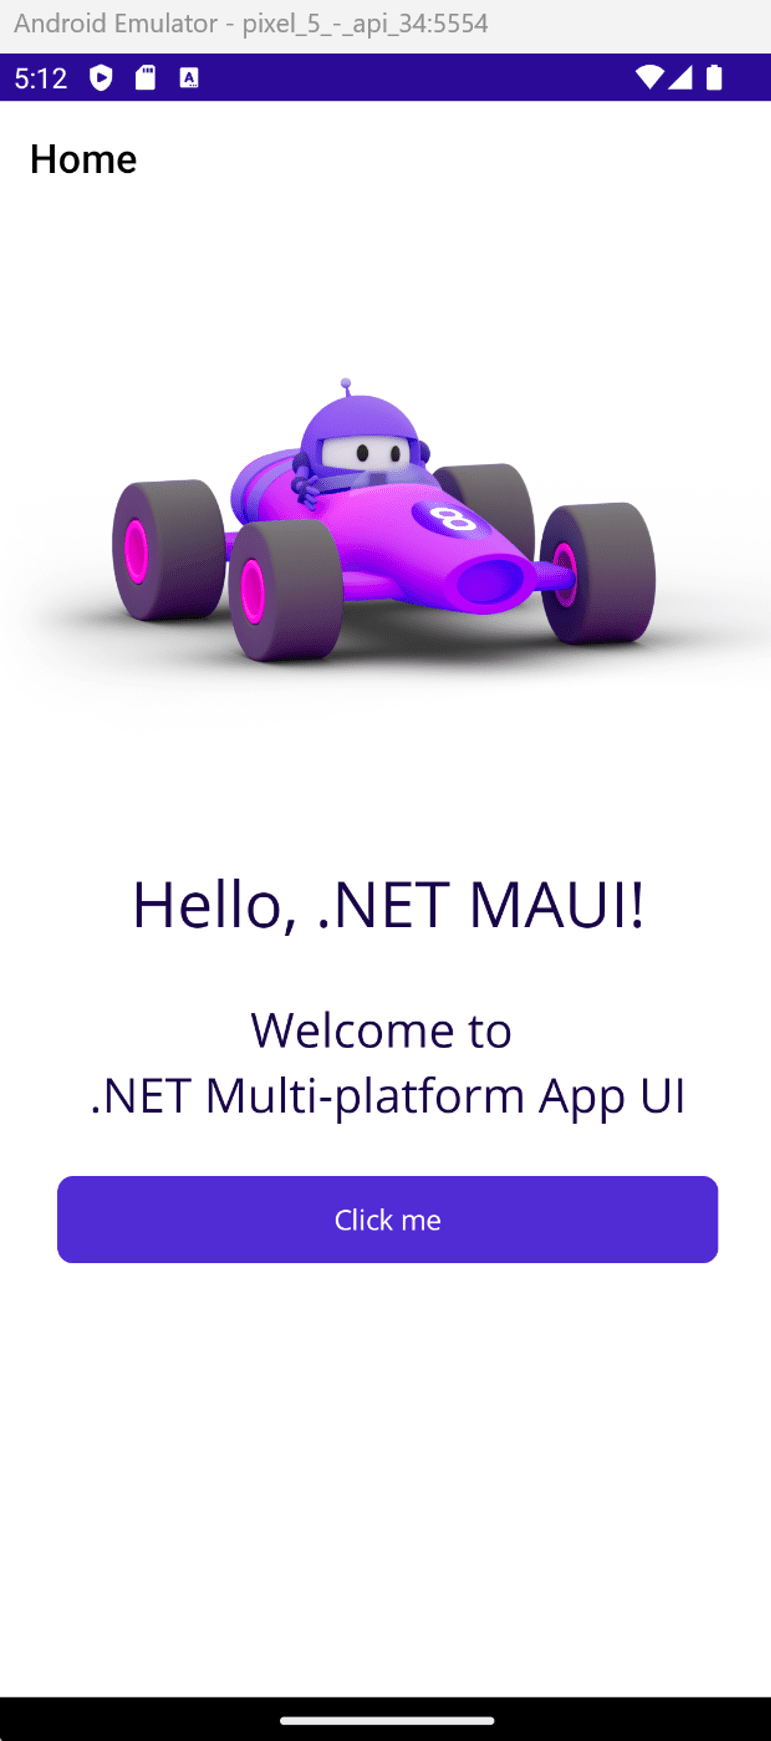 Android Emulator executando o aplicativo .NET MAUI. Uma mensagem 'Hello, World!' é exibida.